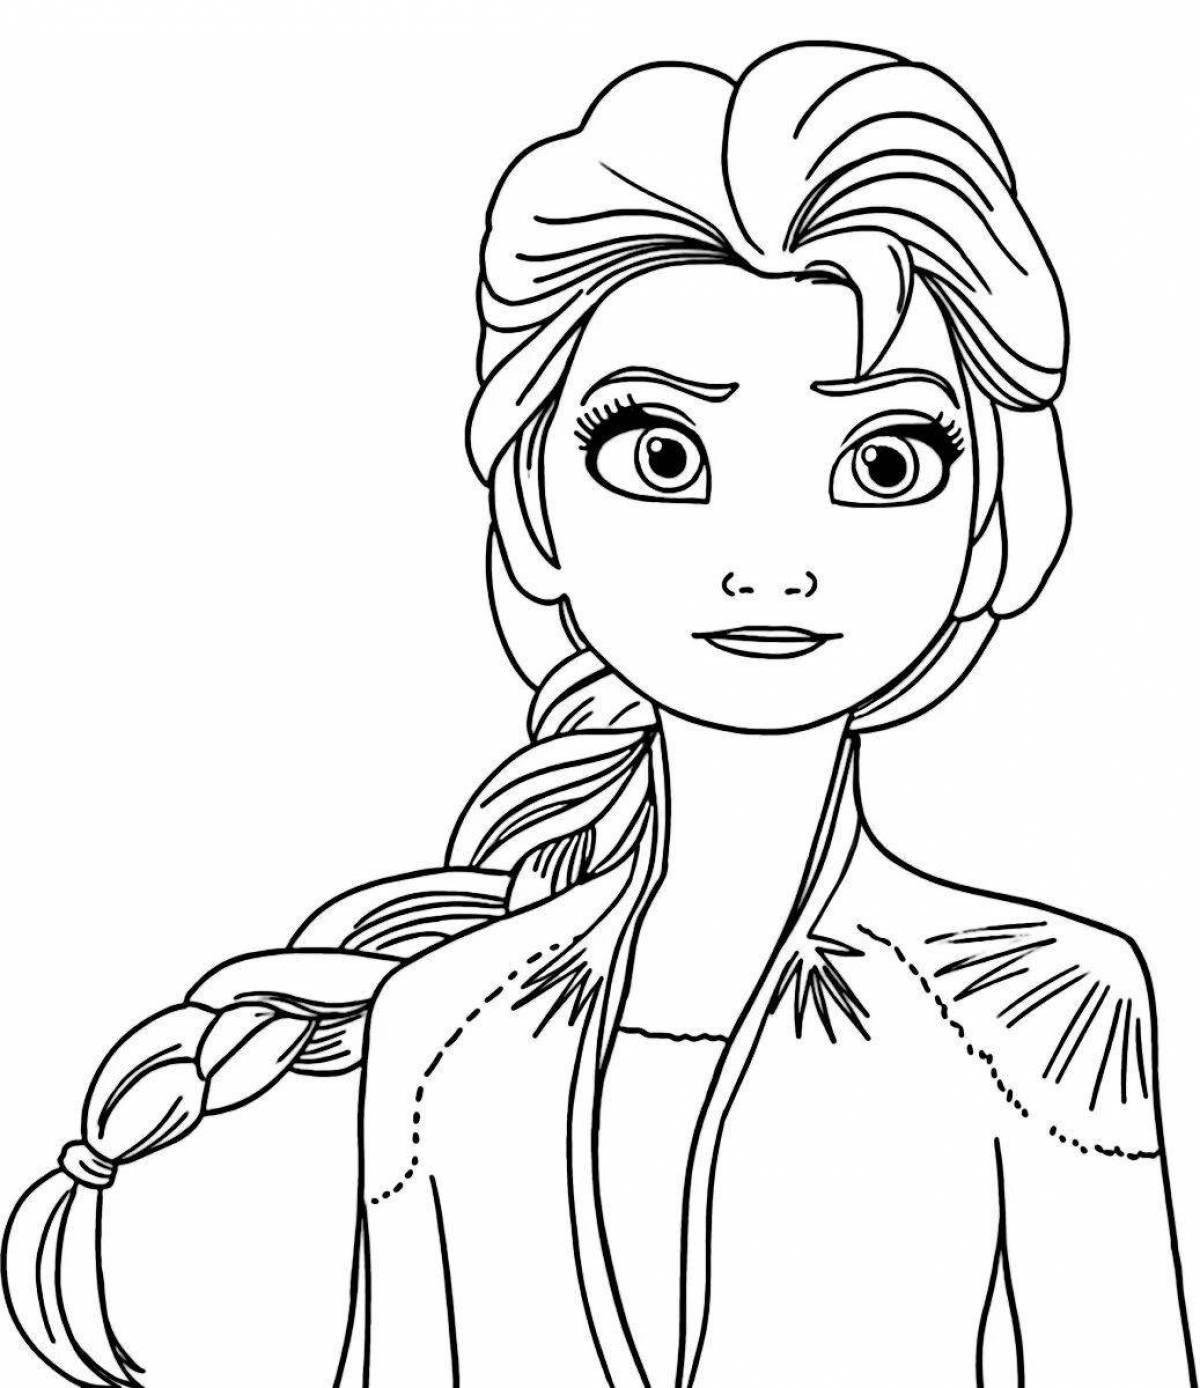 Elsa's beautiful face painting